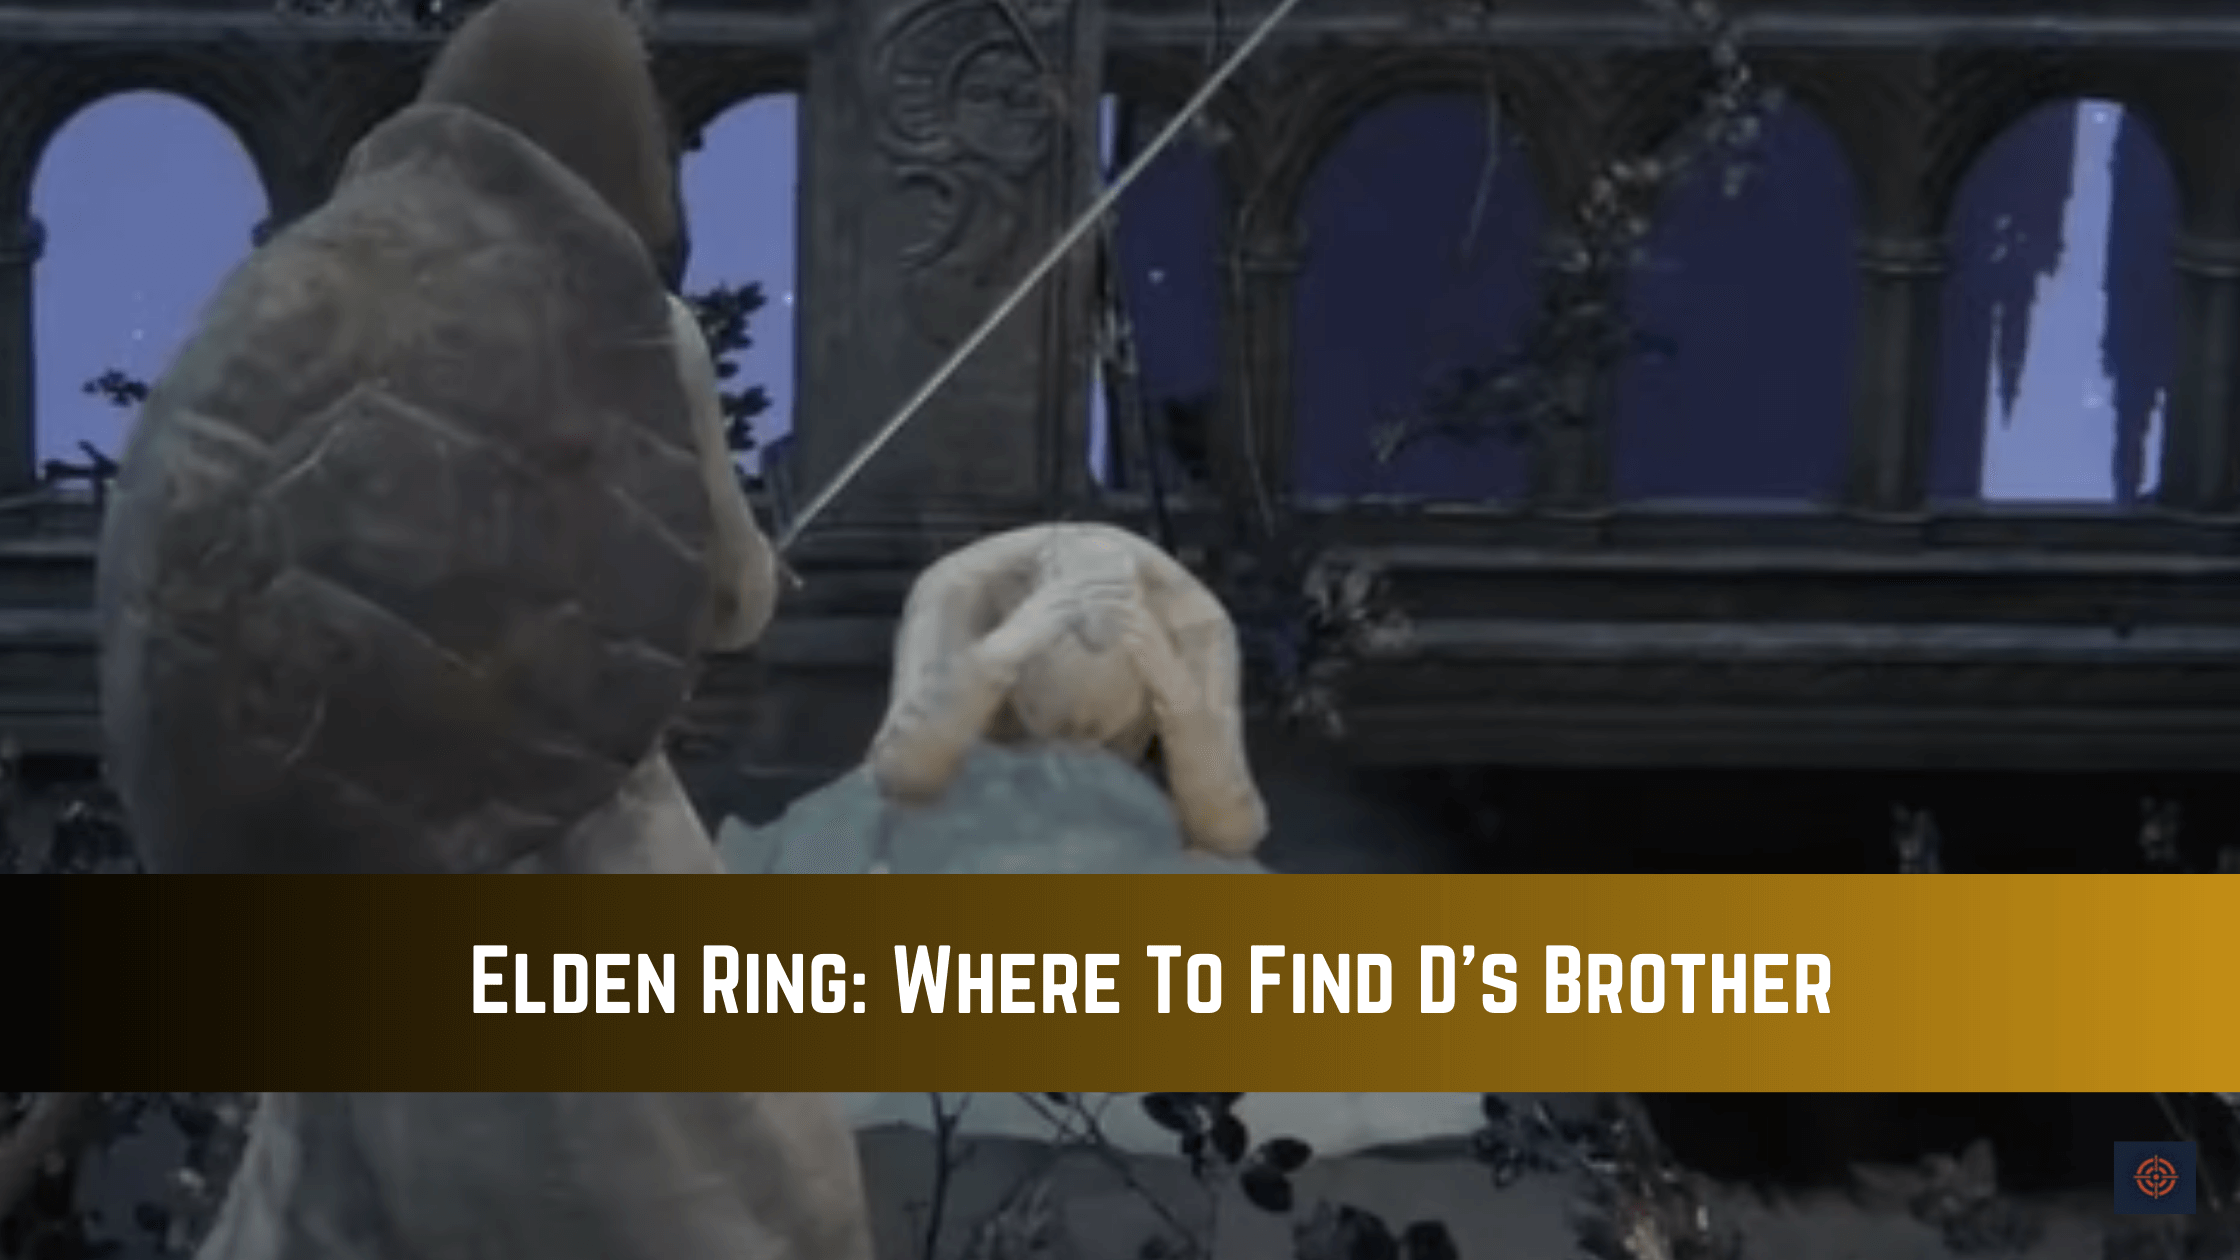 d's brother elden ring